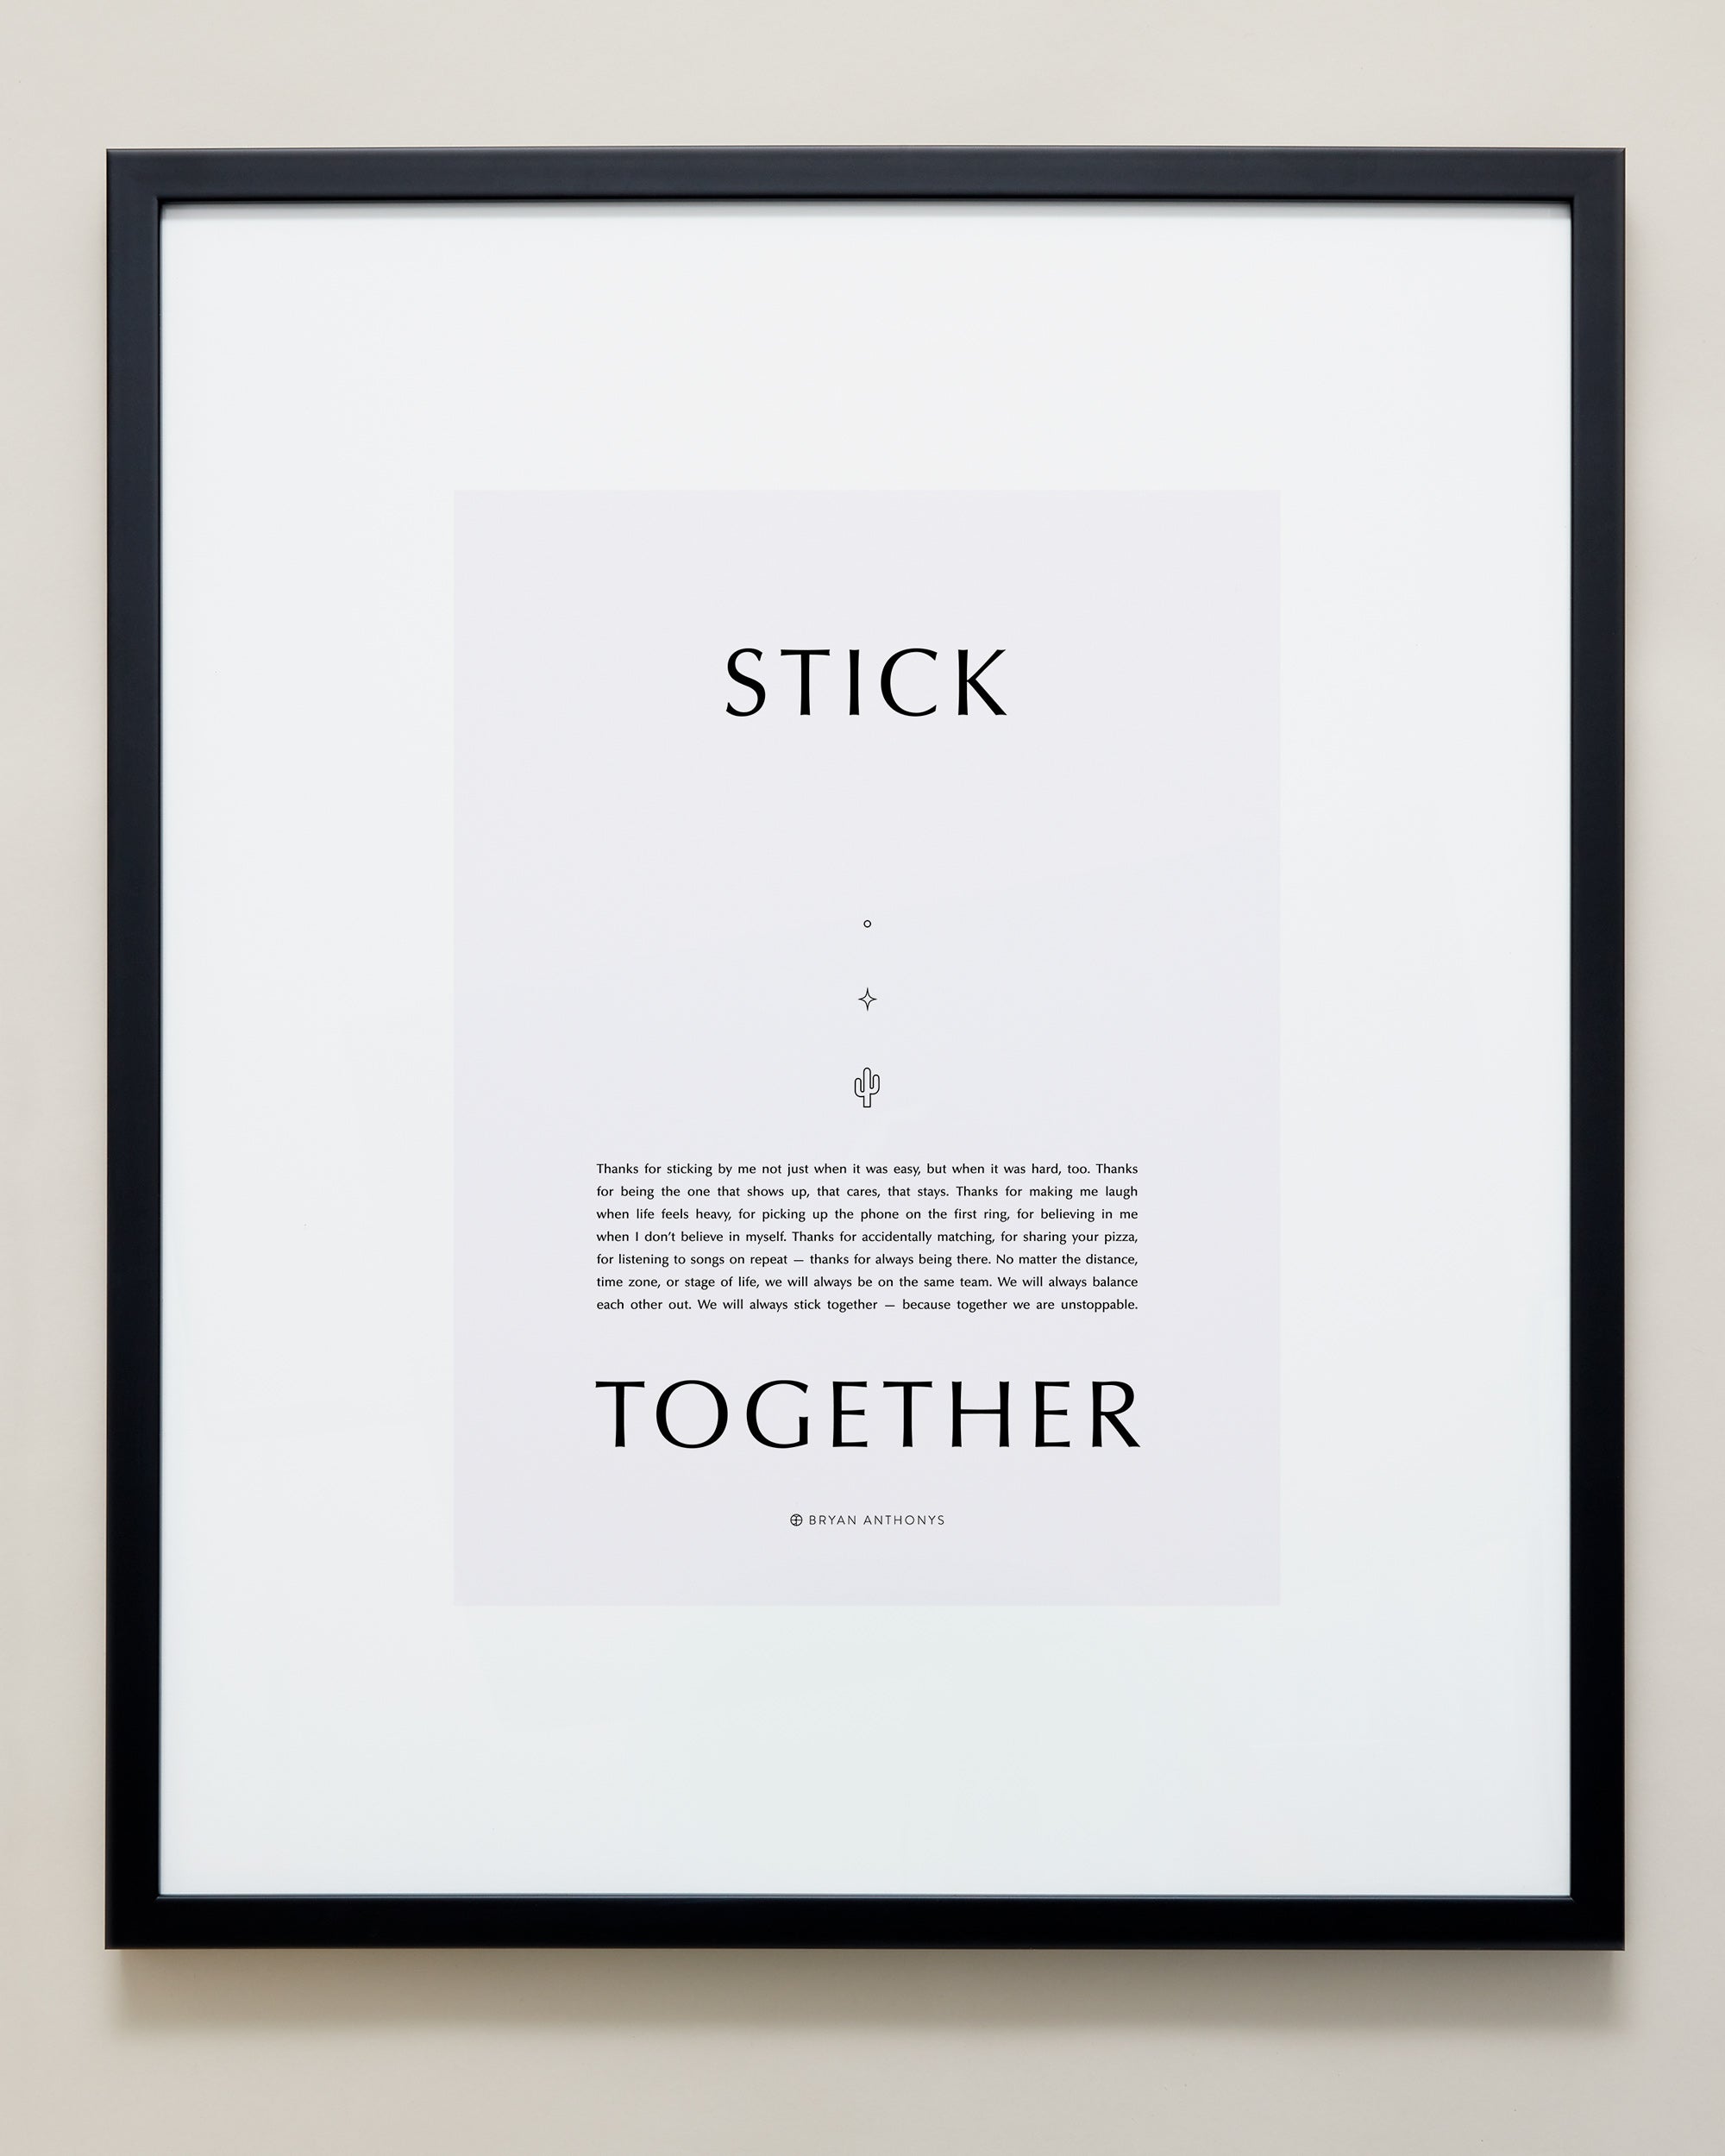 Stick Together Iconic Framed Print showcase large black frame